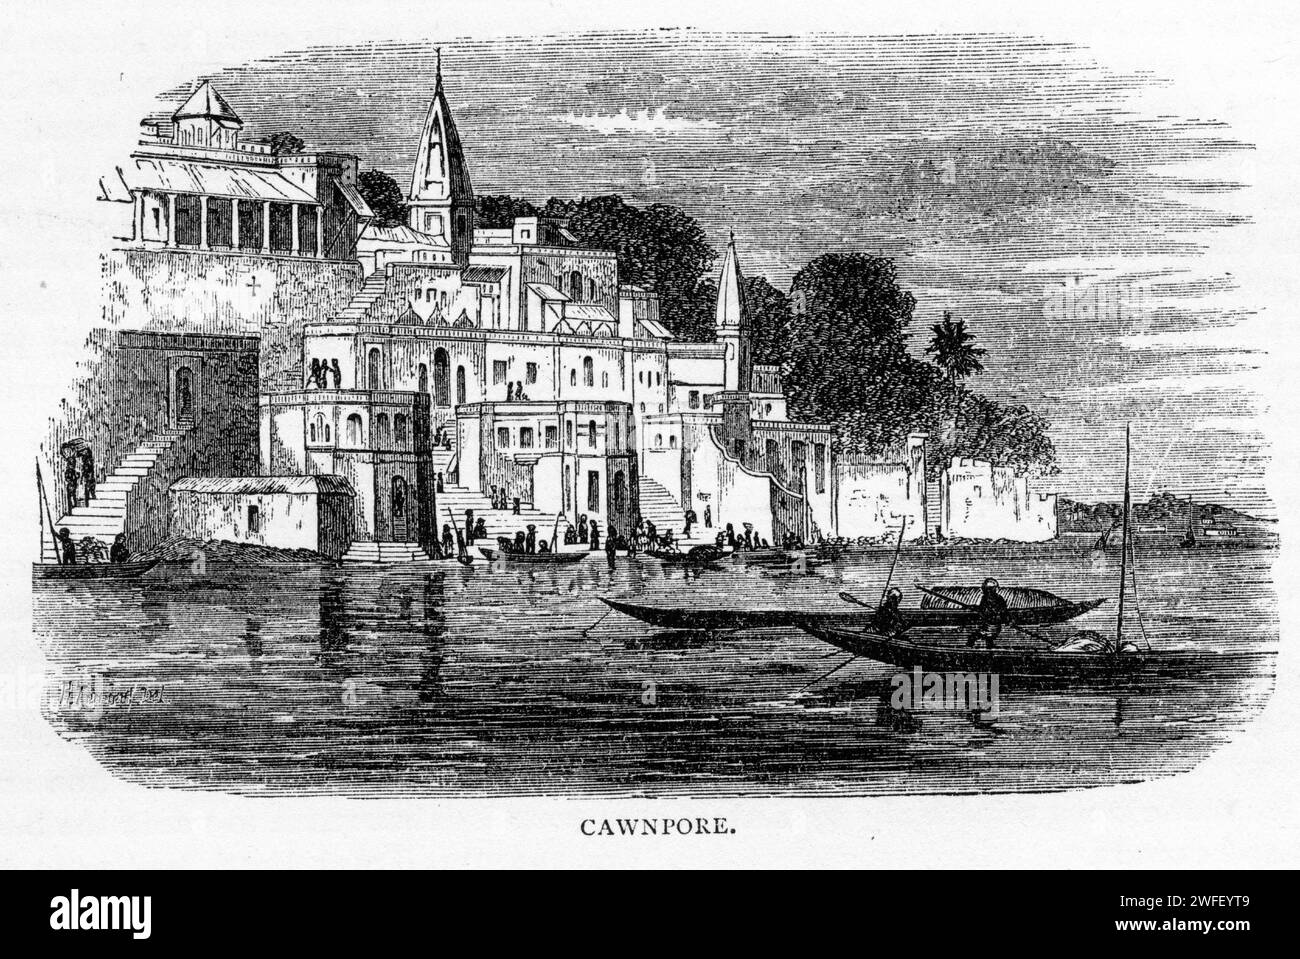 Gravur von Kanpur, früher als Cawnpore anglisiert, einer großen Industriestadt im zentralen westlichen Teil des Bundesstaates Uttar Pradesh, Indien. Kanpur wurde 1207 gegründet und wurde zu einer der wichtigsten Handels- und Militärstationen Britisch-Indiens. Veröffentlicht um 1900 Stockfoto